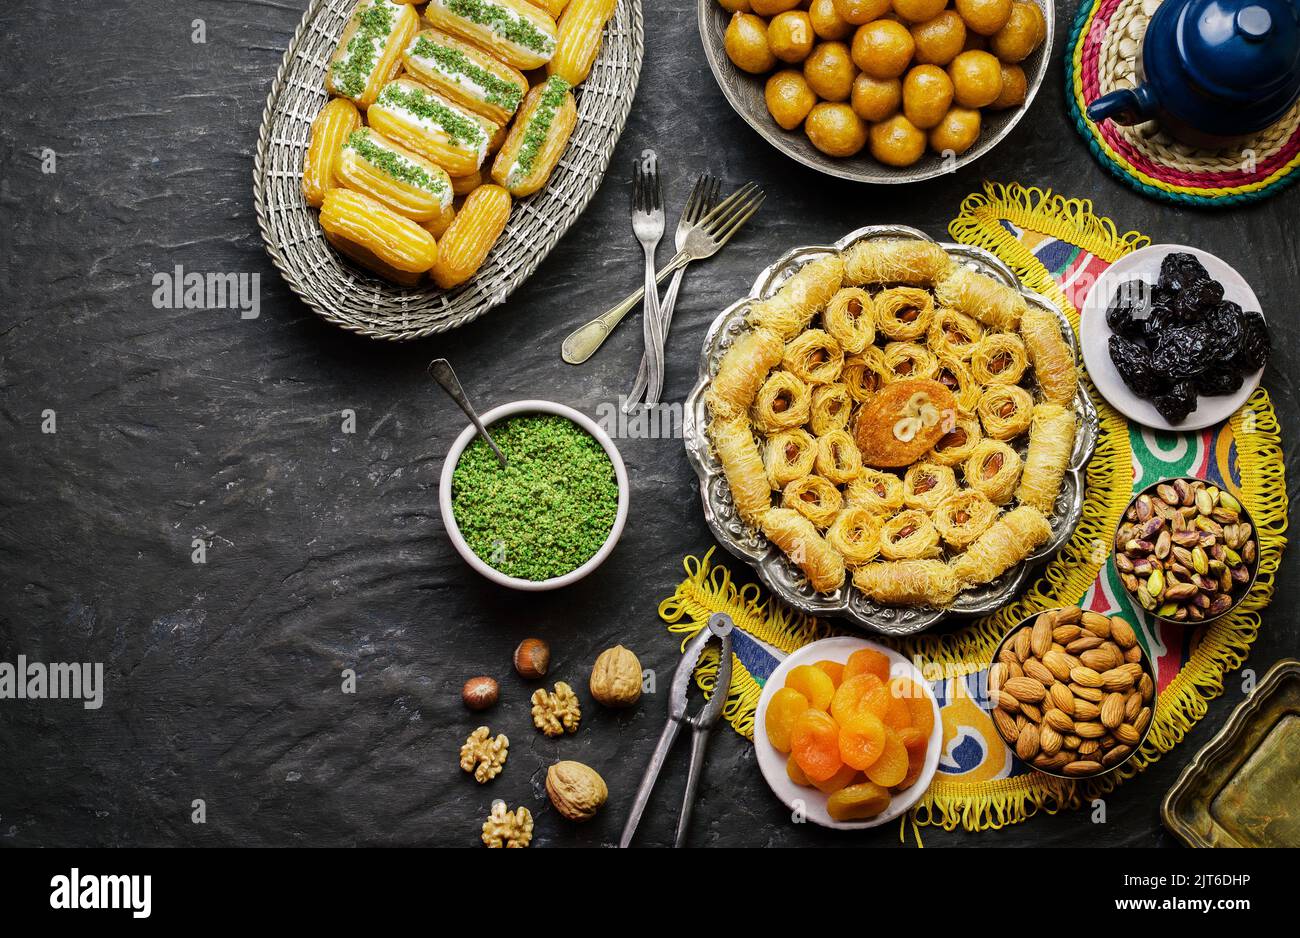 Cuisine arabe : desserts du Moyen-Orient. Une délicieuse collection de desserts traditionnels du Ramadan. Servi avec des noix savoureuses, des fruits secs, du sirop de miel. Banque D'Images